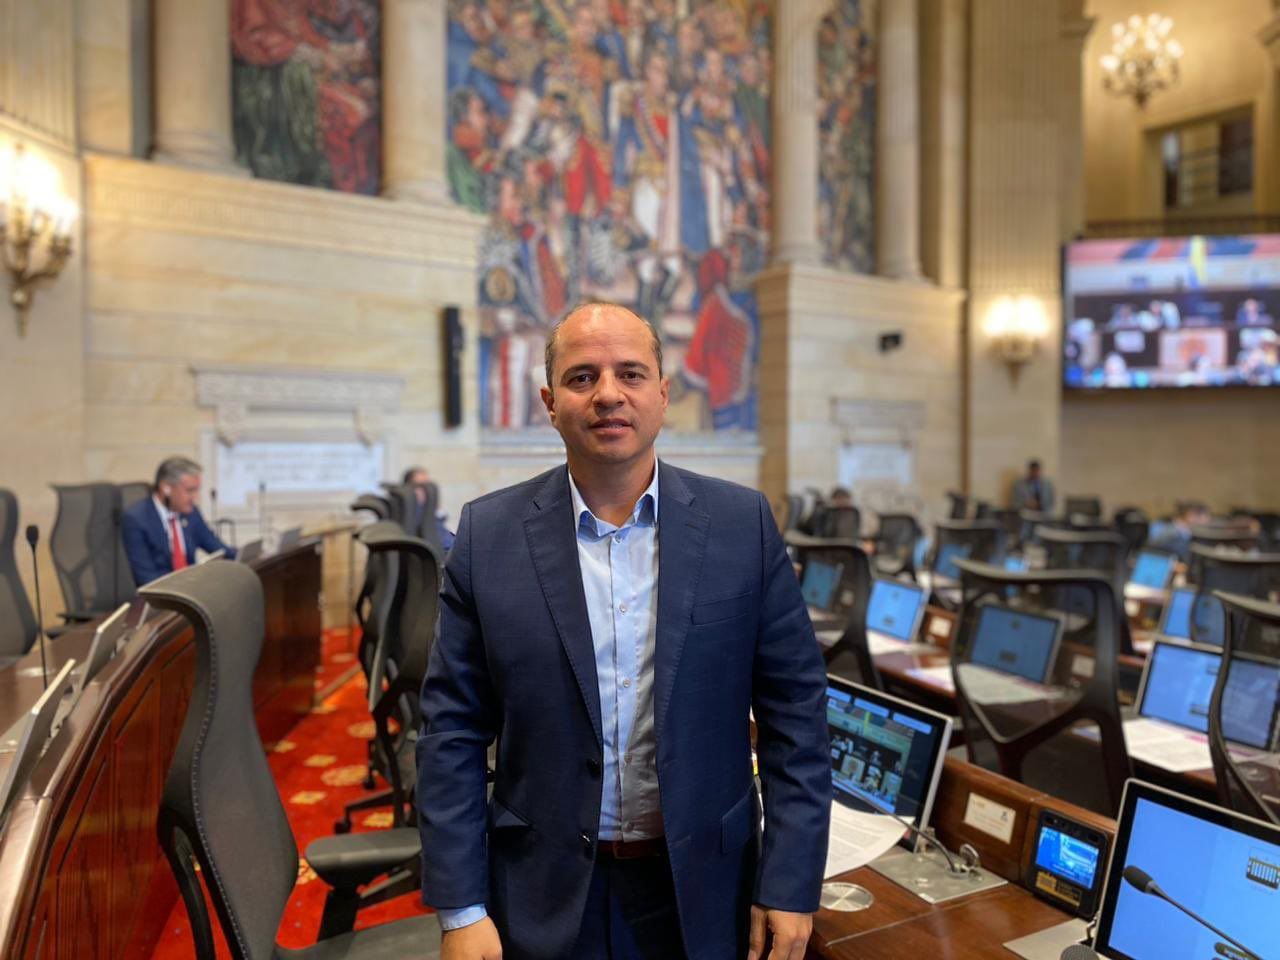 Juan Espinal representante a la Cámara por Antioquia del Centro Democrático 2018-2022 / 2022-2026. Foto: Redes sociales.